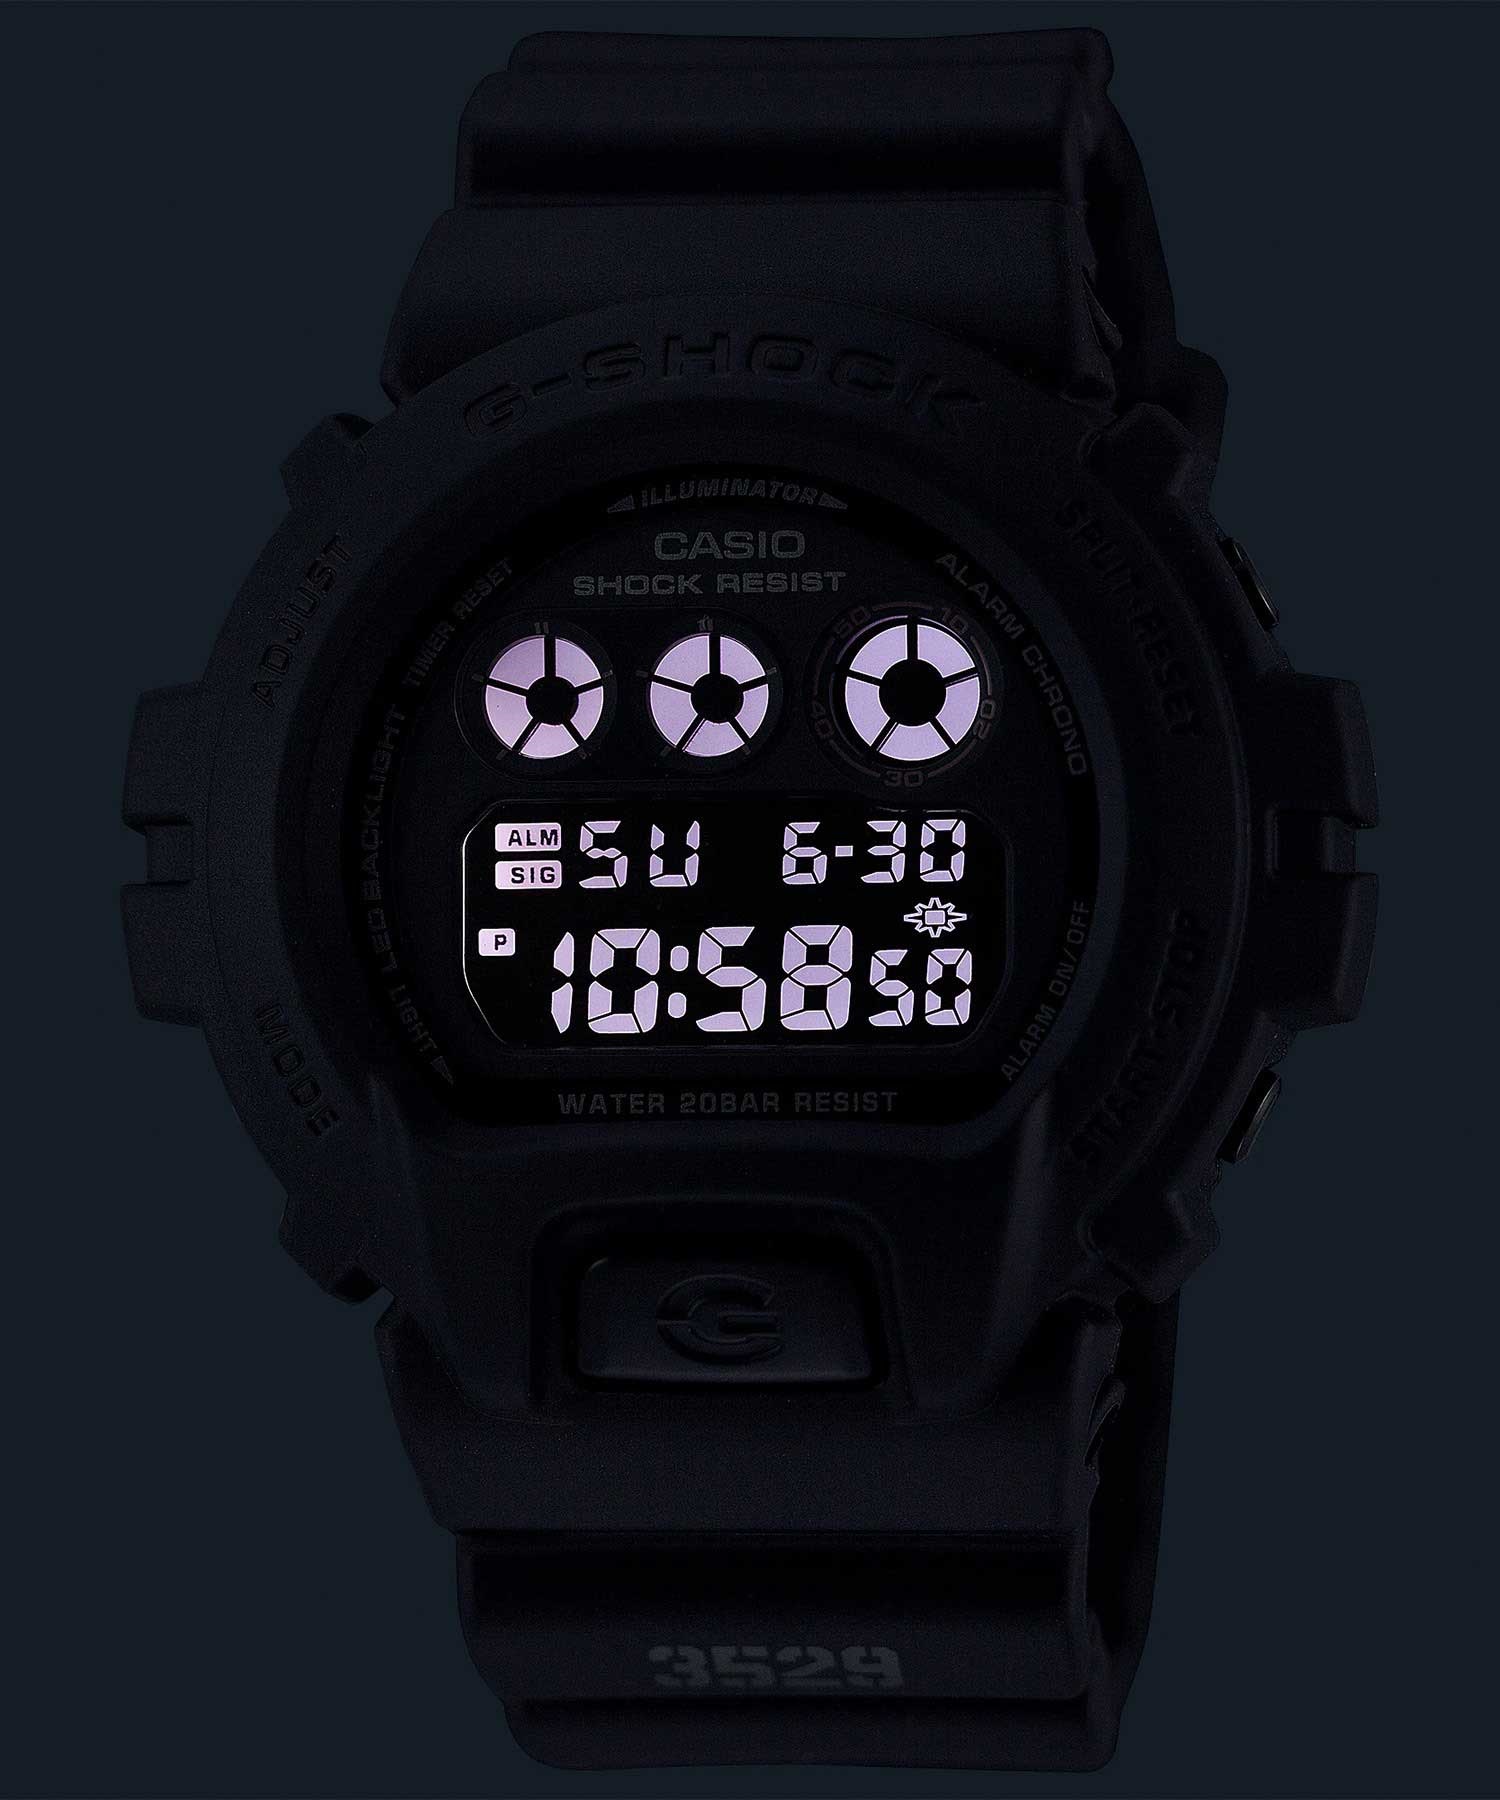 G-SHOCK ジーショック 時計 腕時計 DW-6900UMS-1JF(BK-ONESIZE)